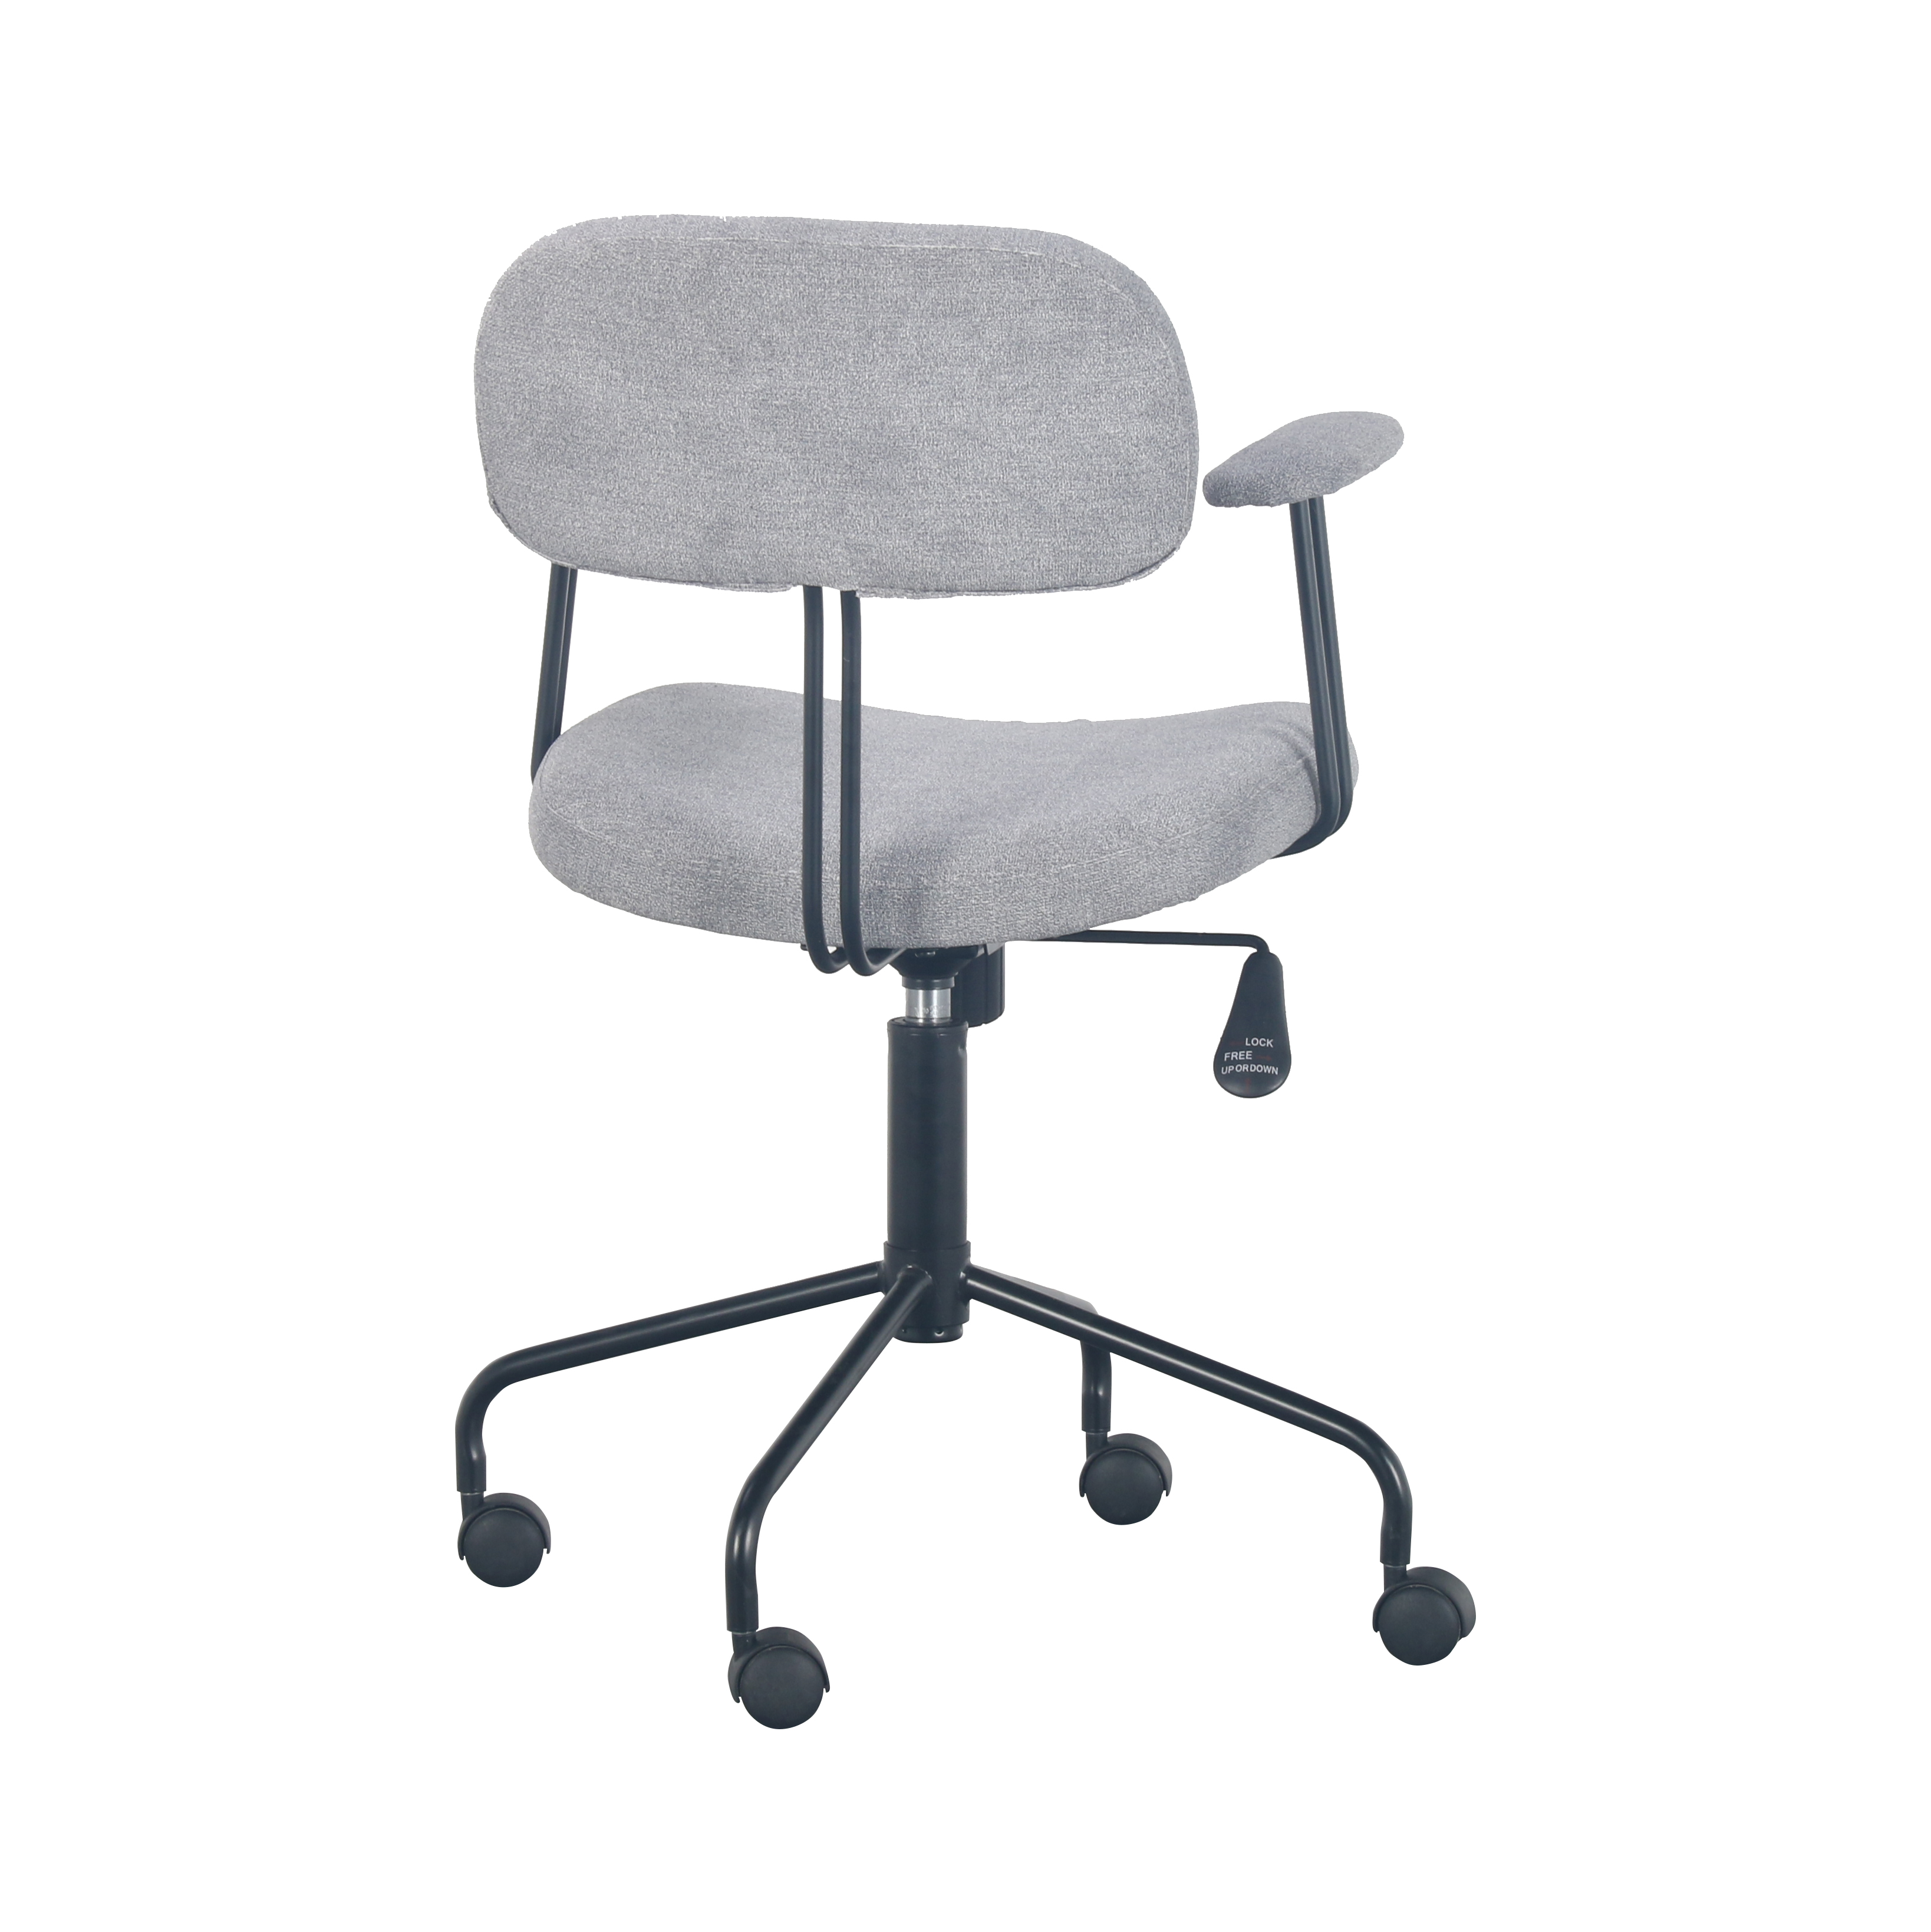 O-009 Modern rotatable office chair